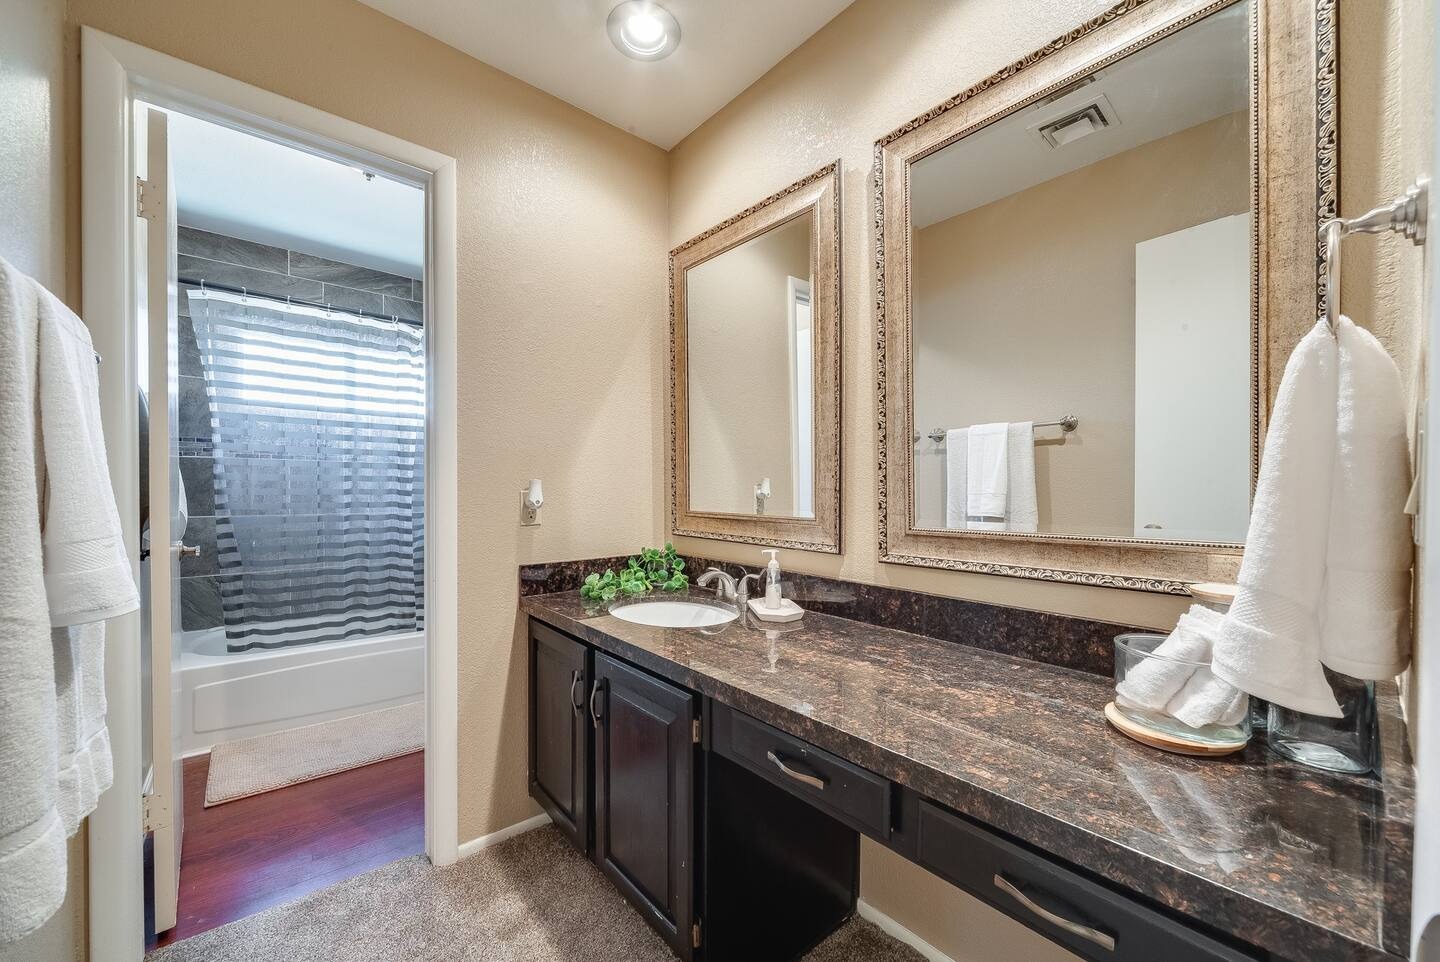 Glendale Vacation Rentals, Cahill Casa - Full bathroom